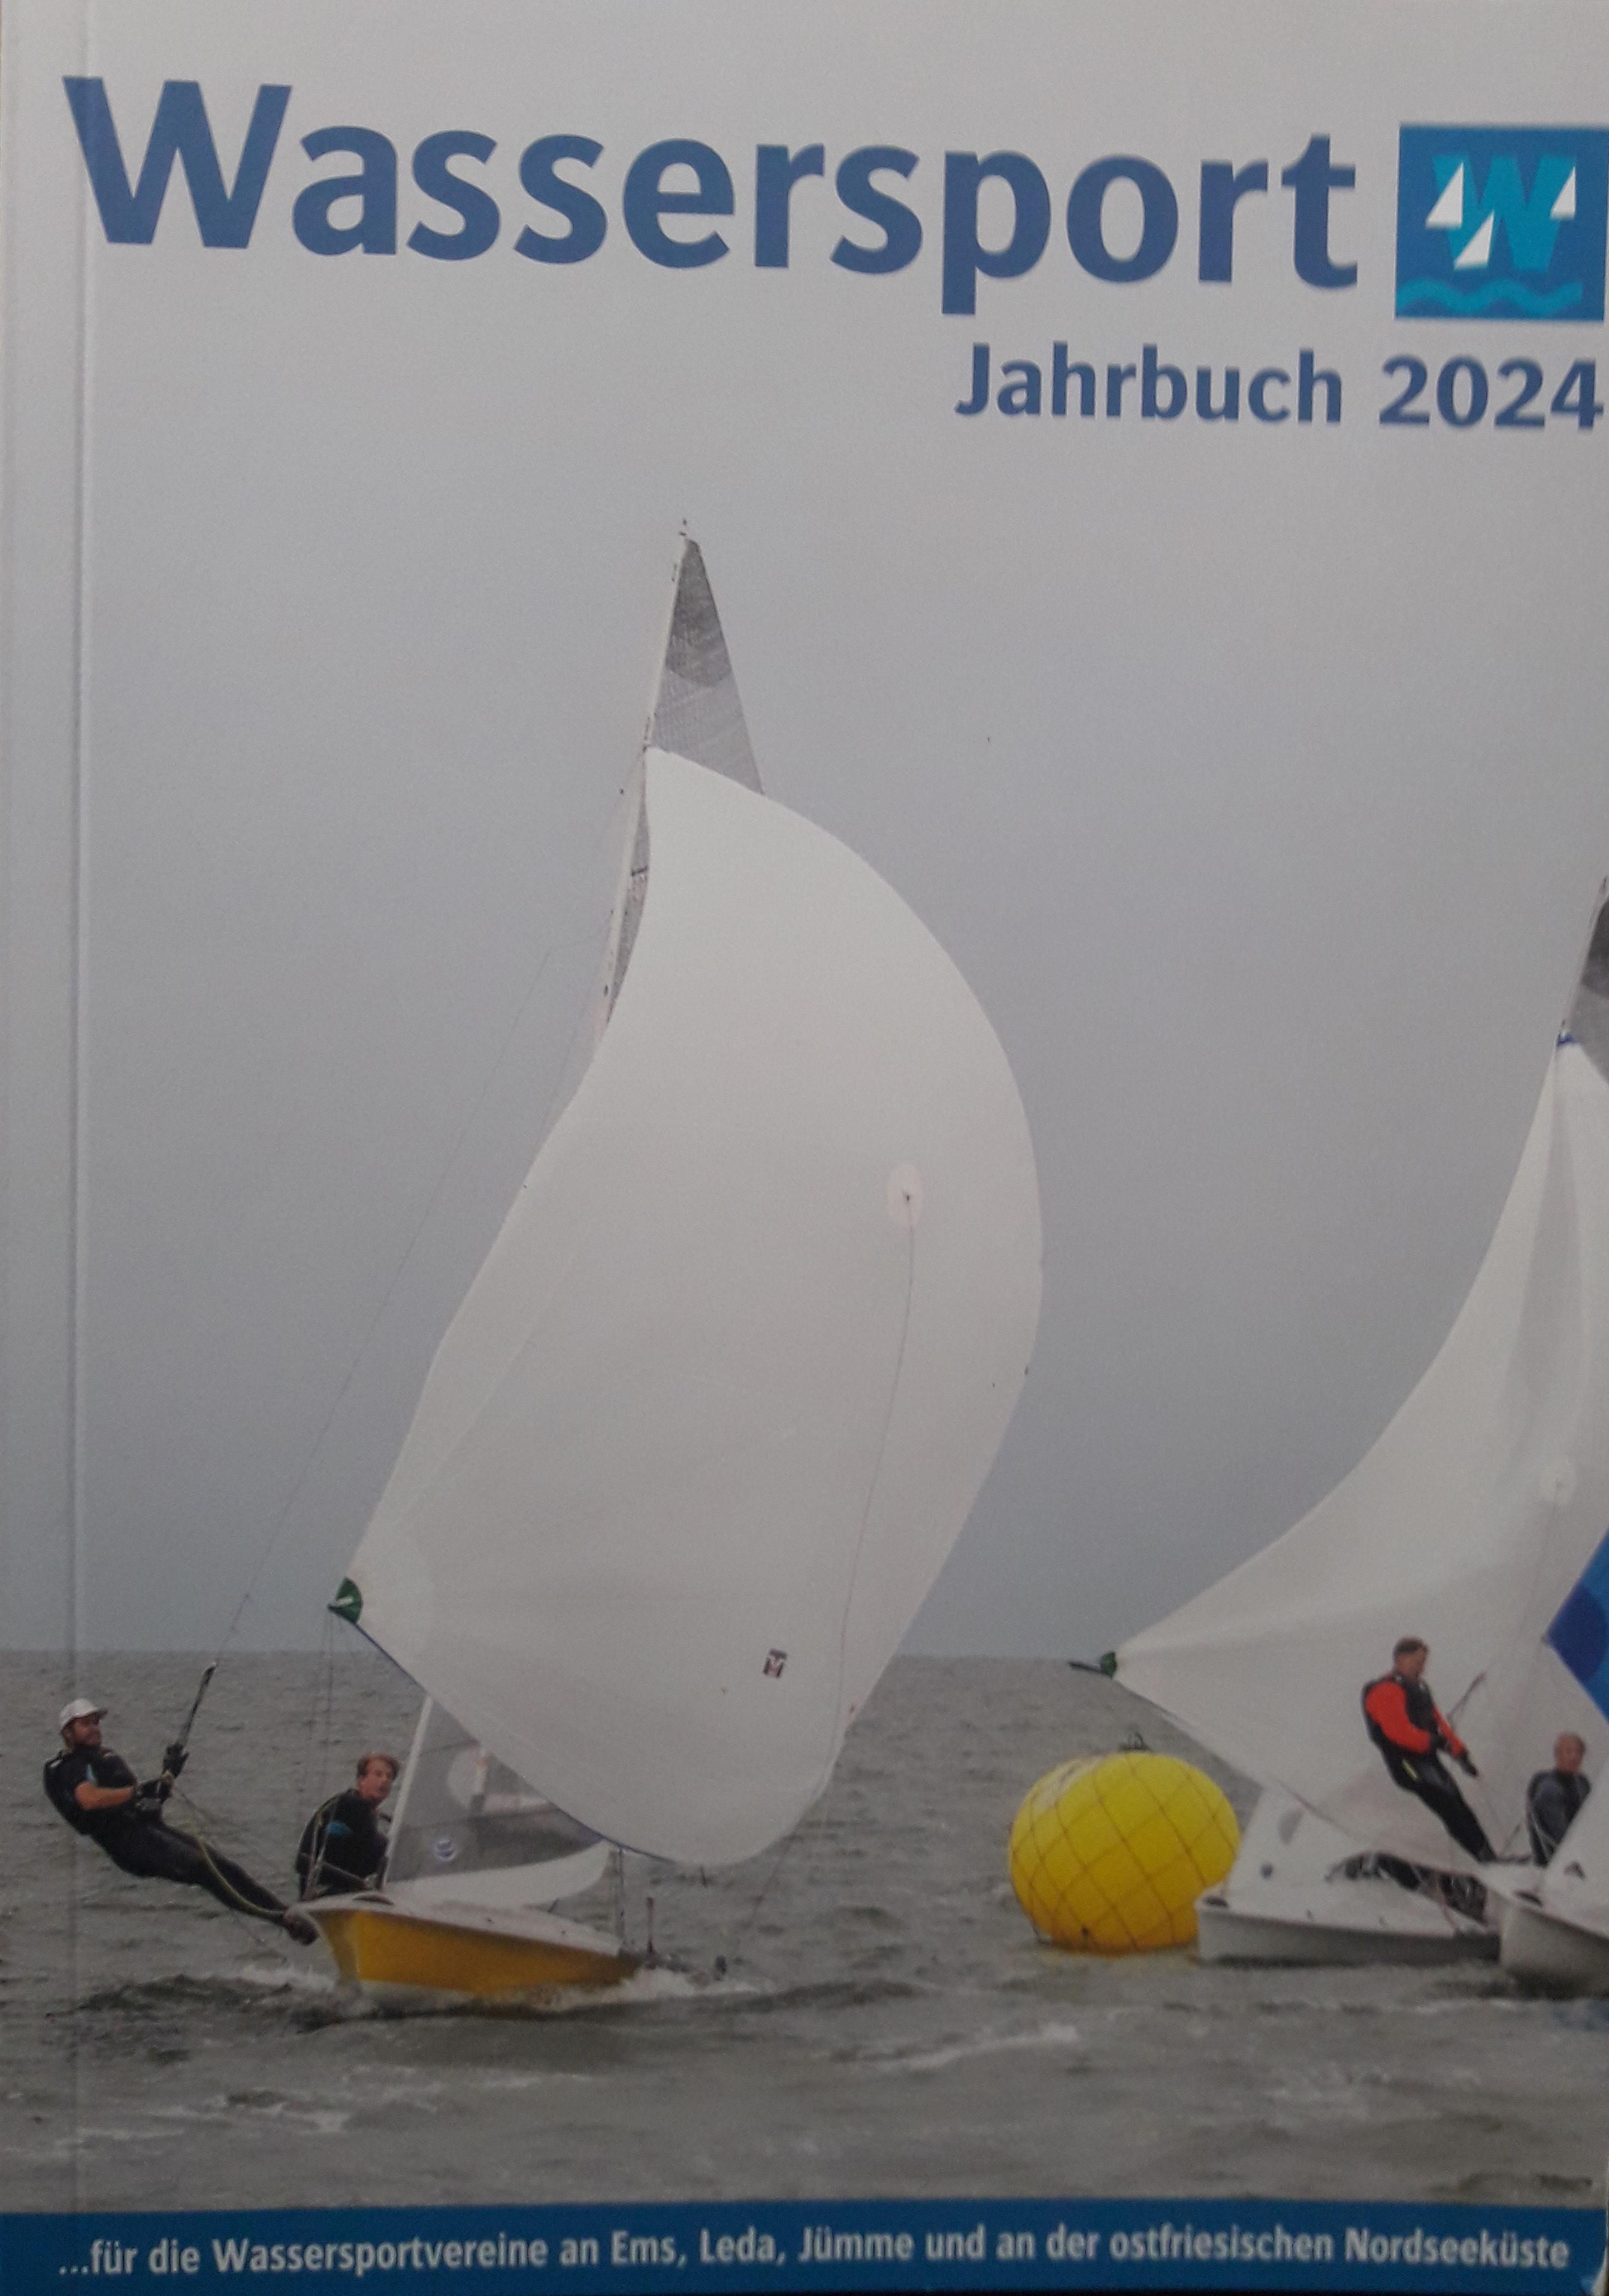 Wassersport Jahrbuch 2024 ist wieder erhältlich